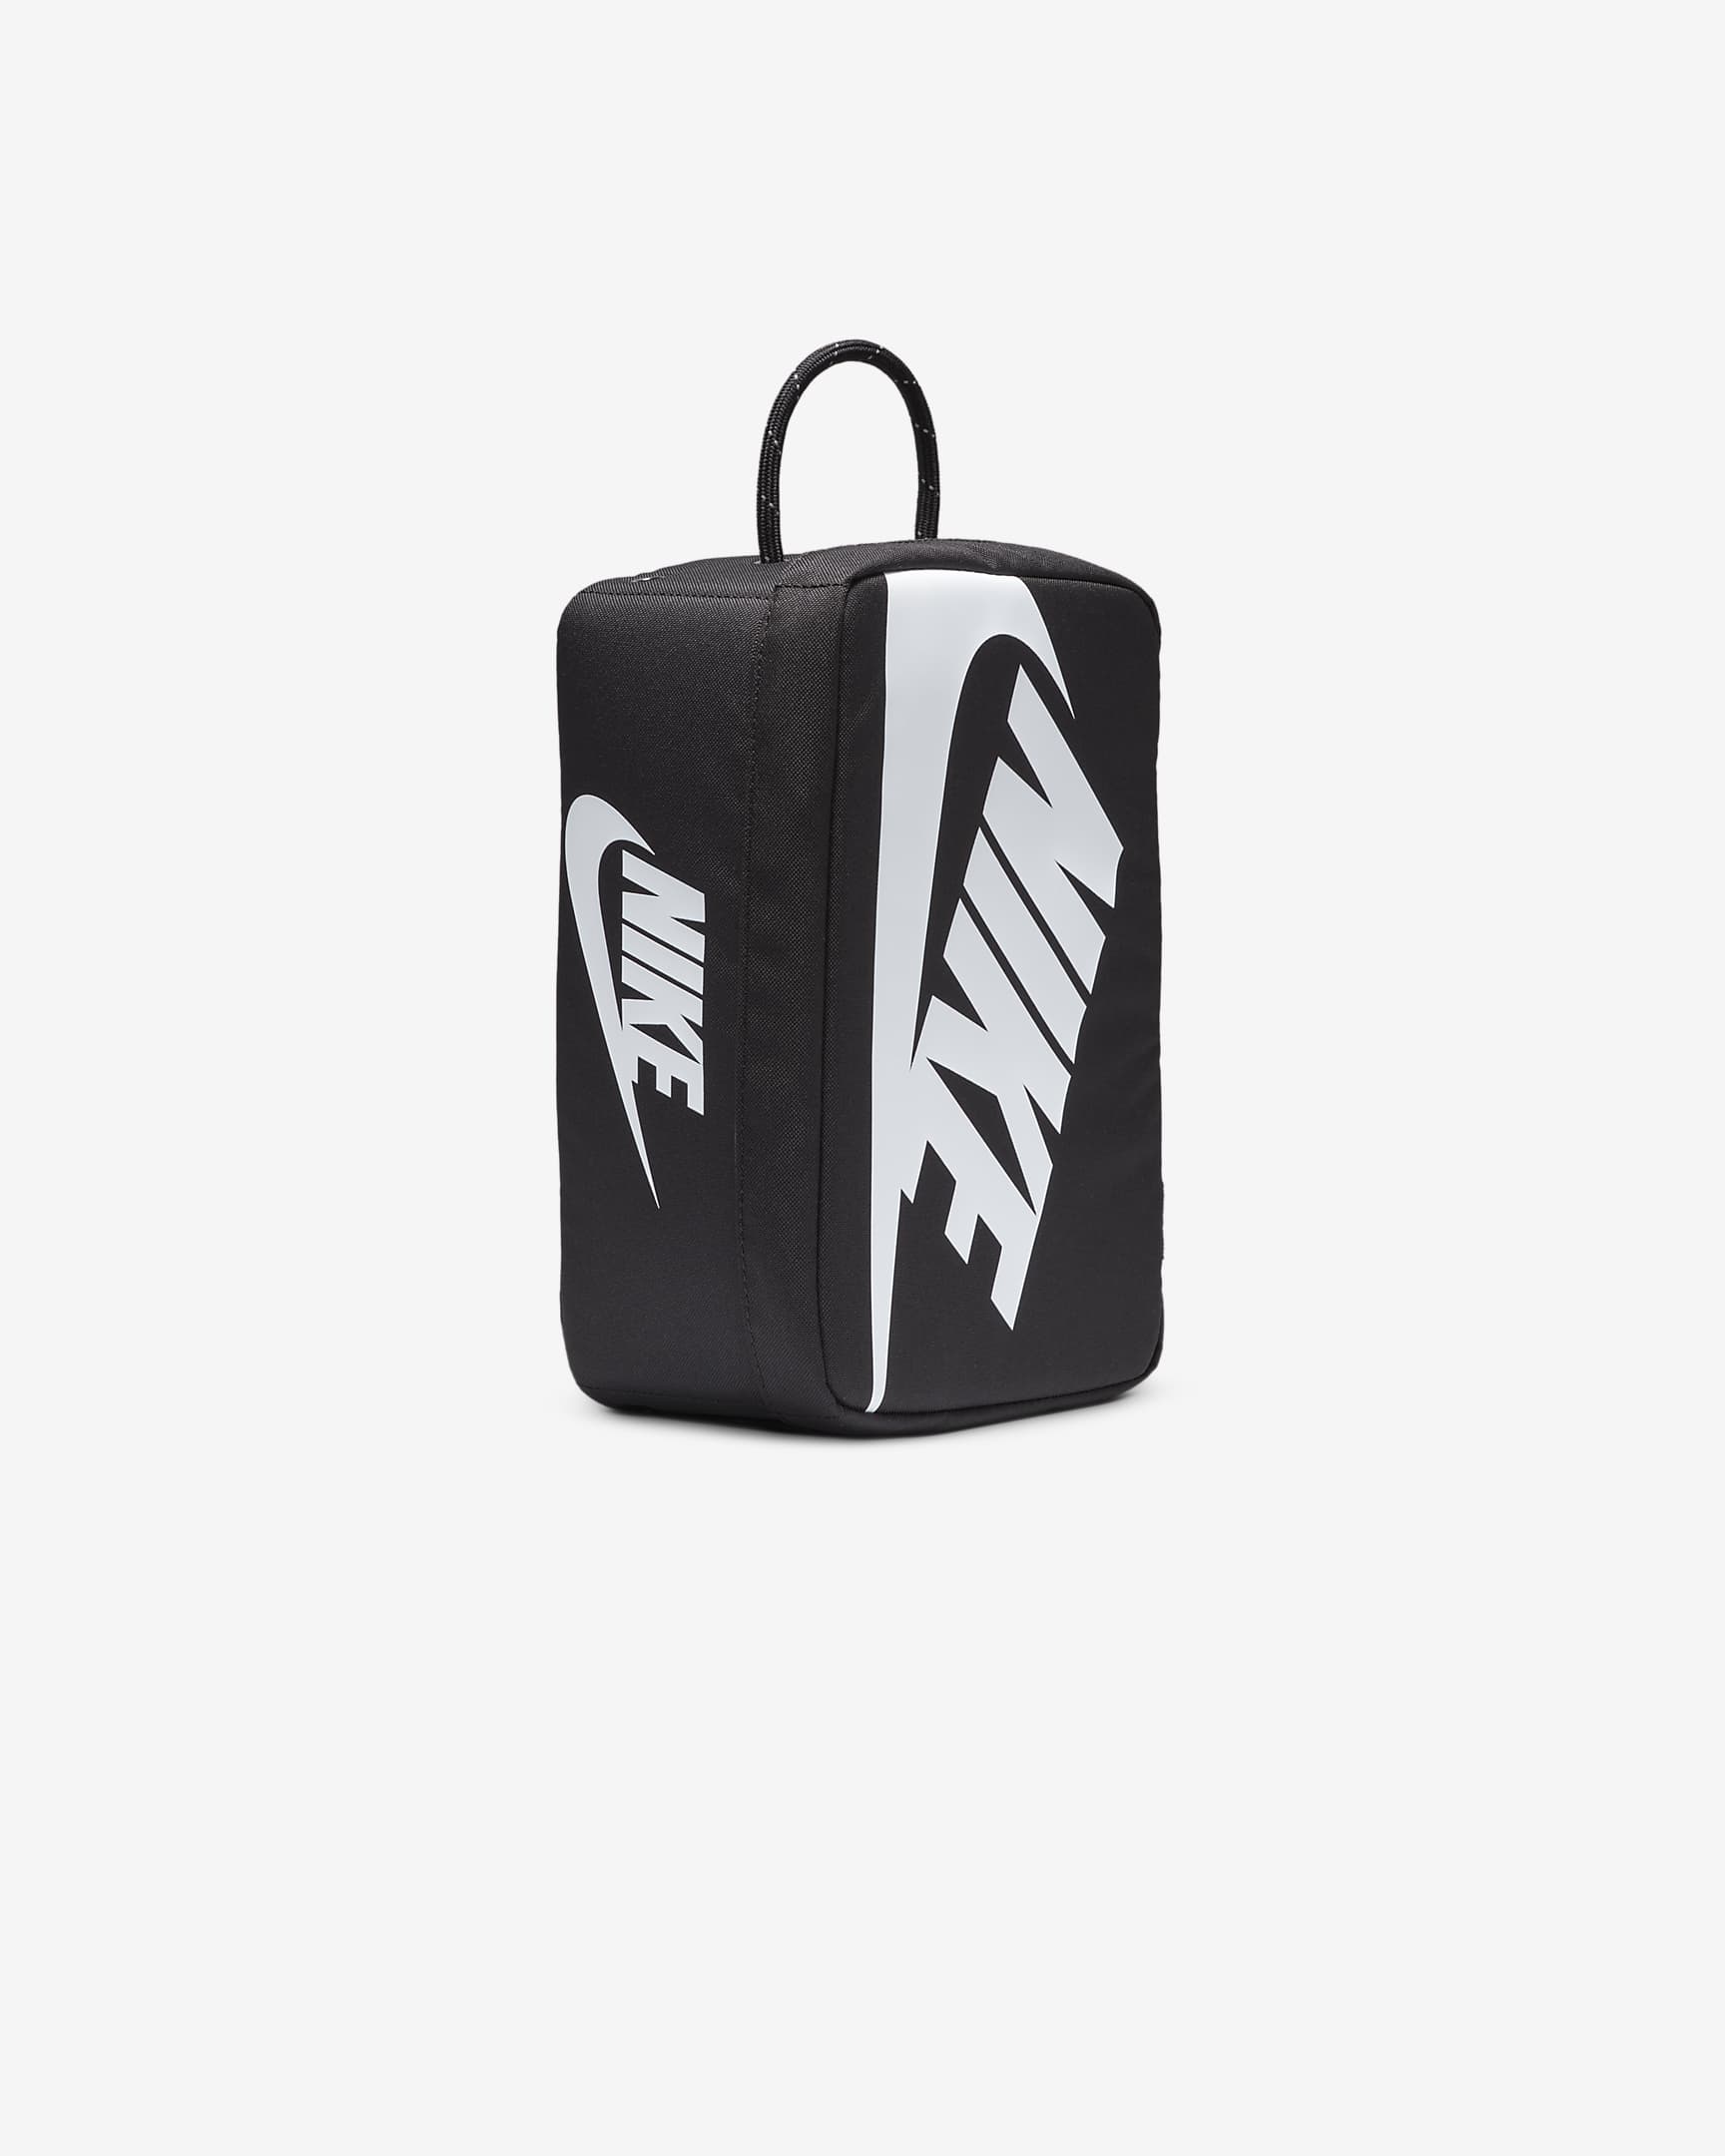 Nike Shoe Box Bag (Small, 8L). Nike IL